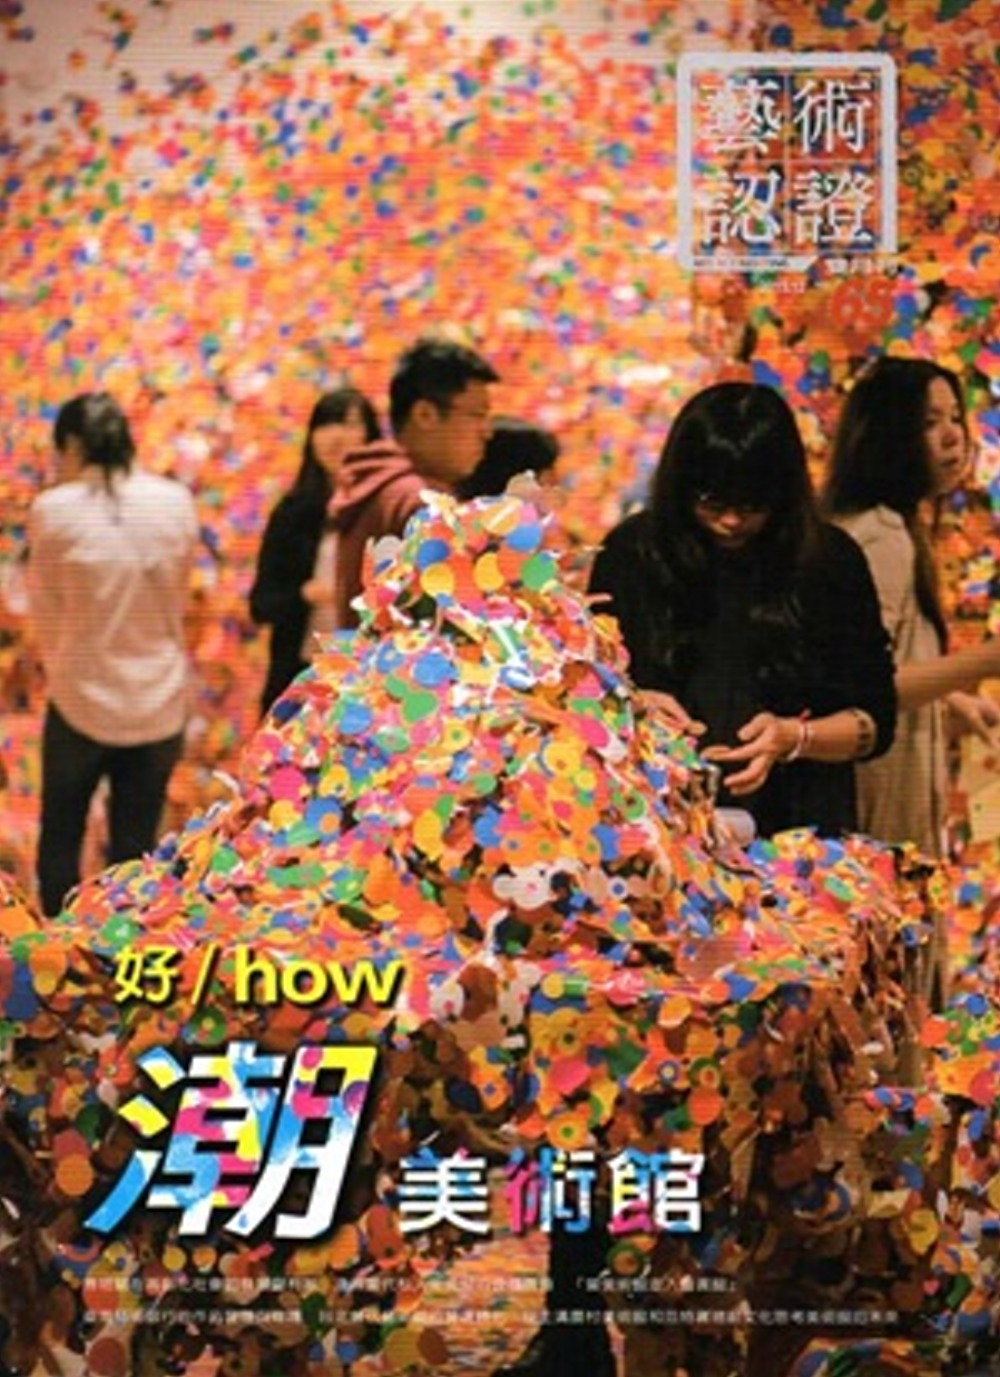 藝術認證(雙月刊)NO.65-2015.12